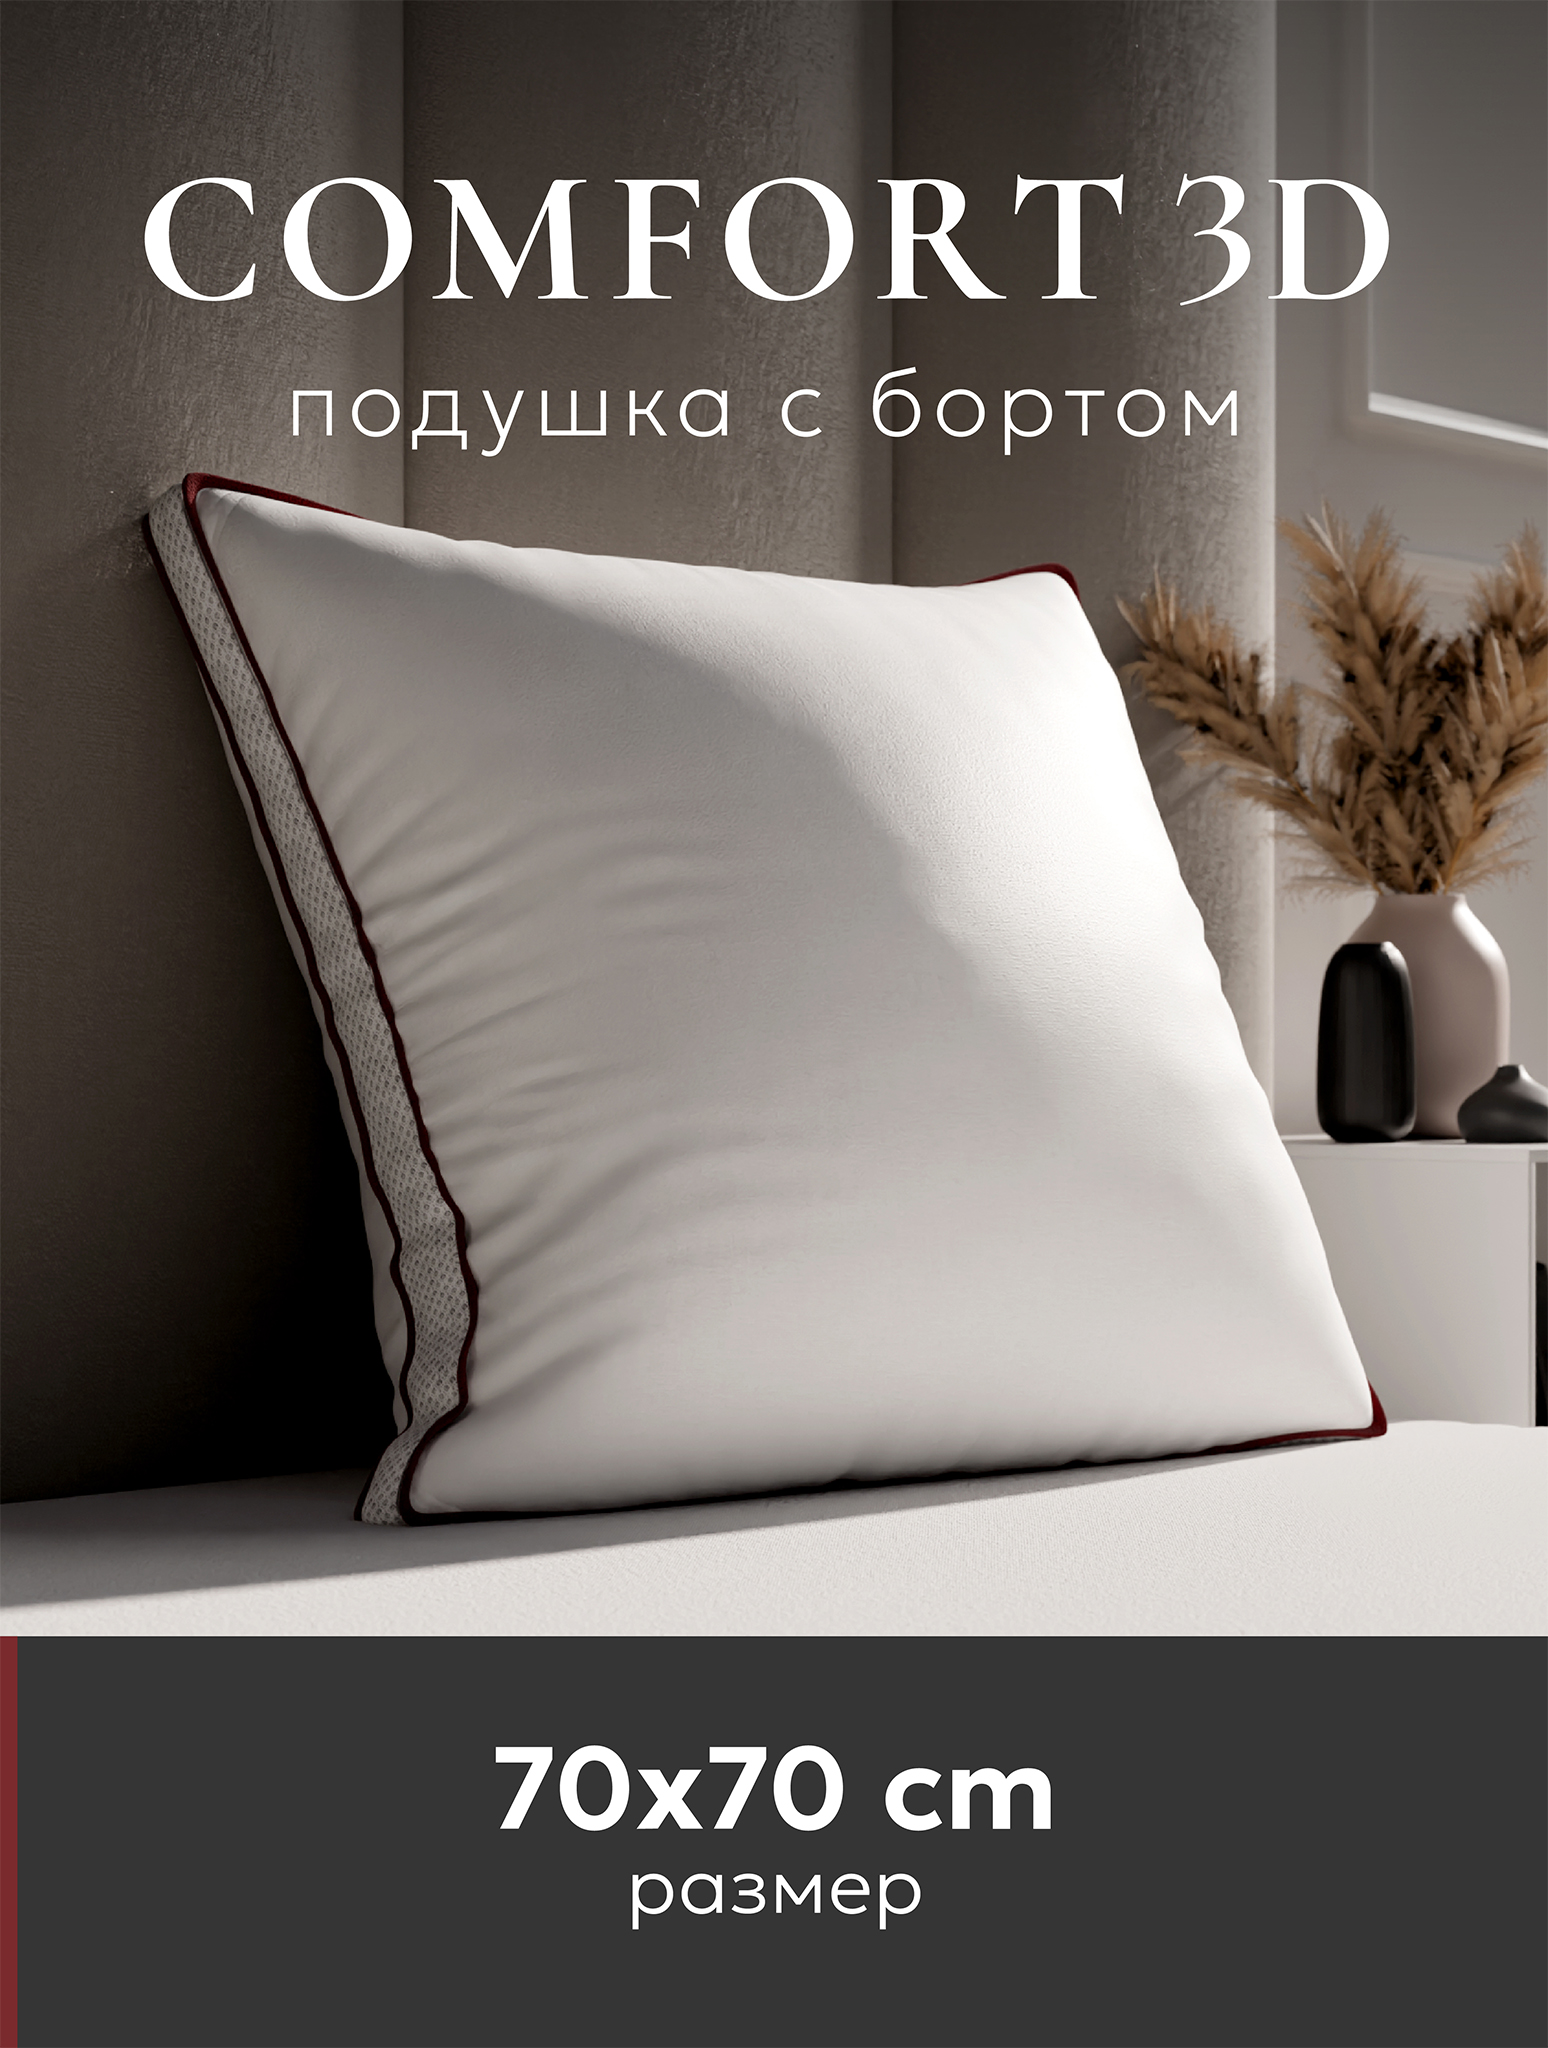   Espera Comfort-3D /   3   70x70